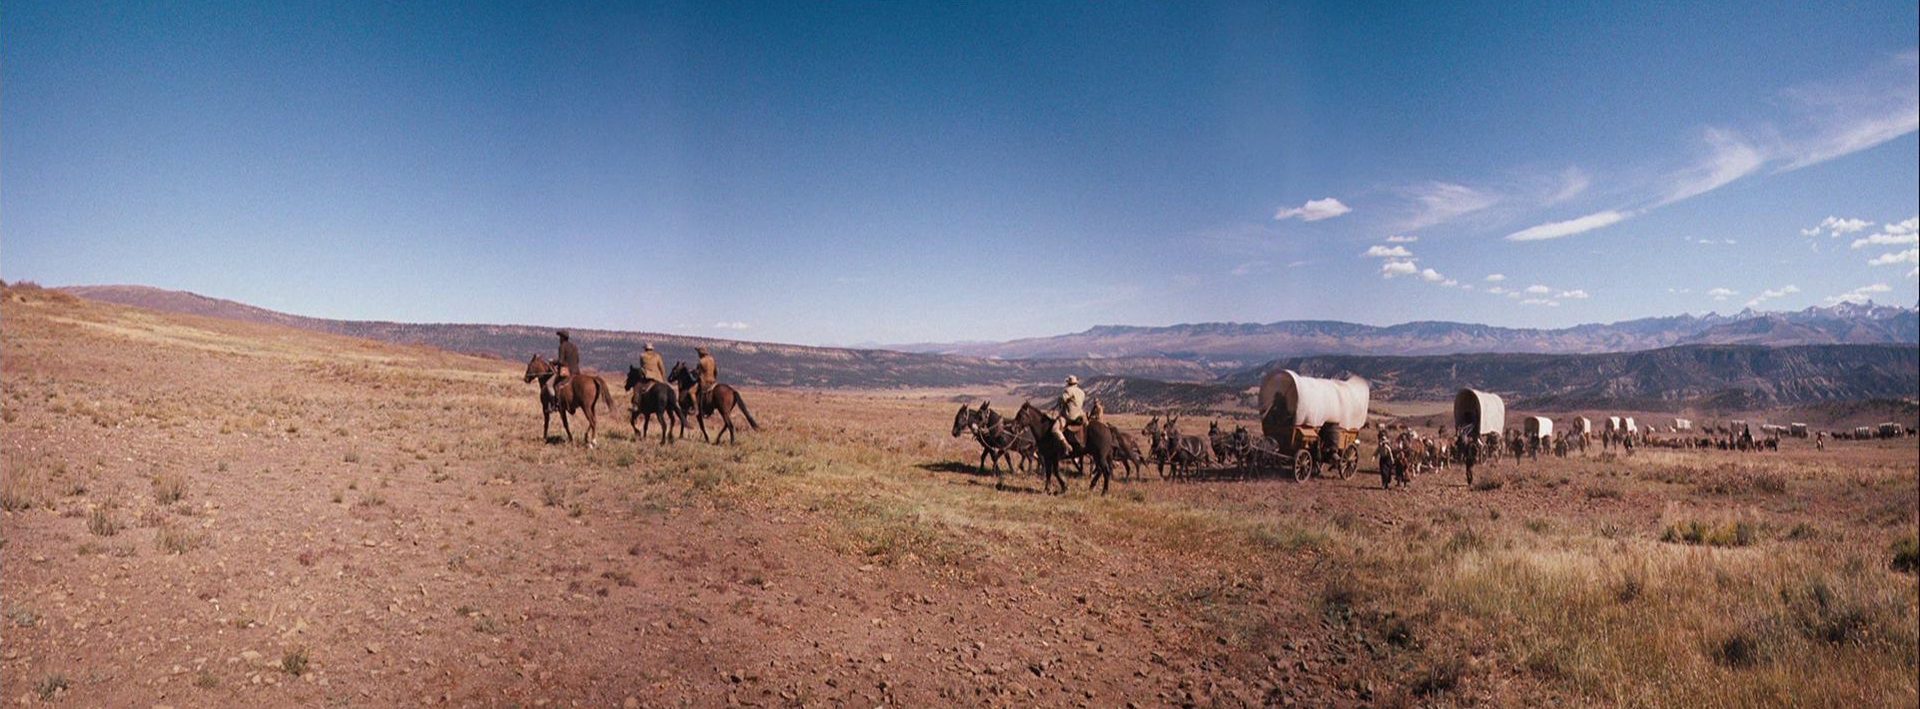 Ein Siedlertreck mit seinen Planwagen unterwegs durch die Prärie vor strahlend blauem Himmel.